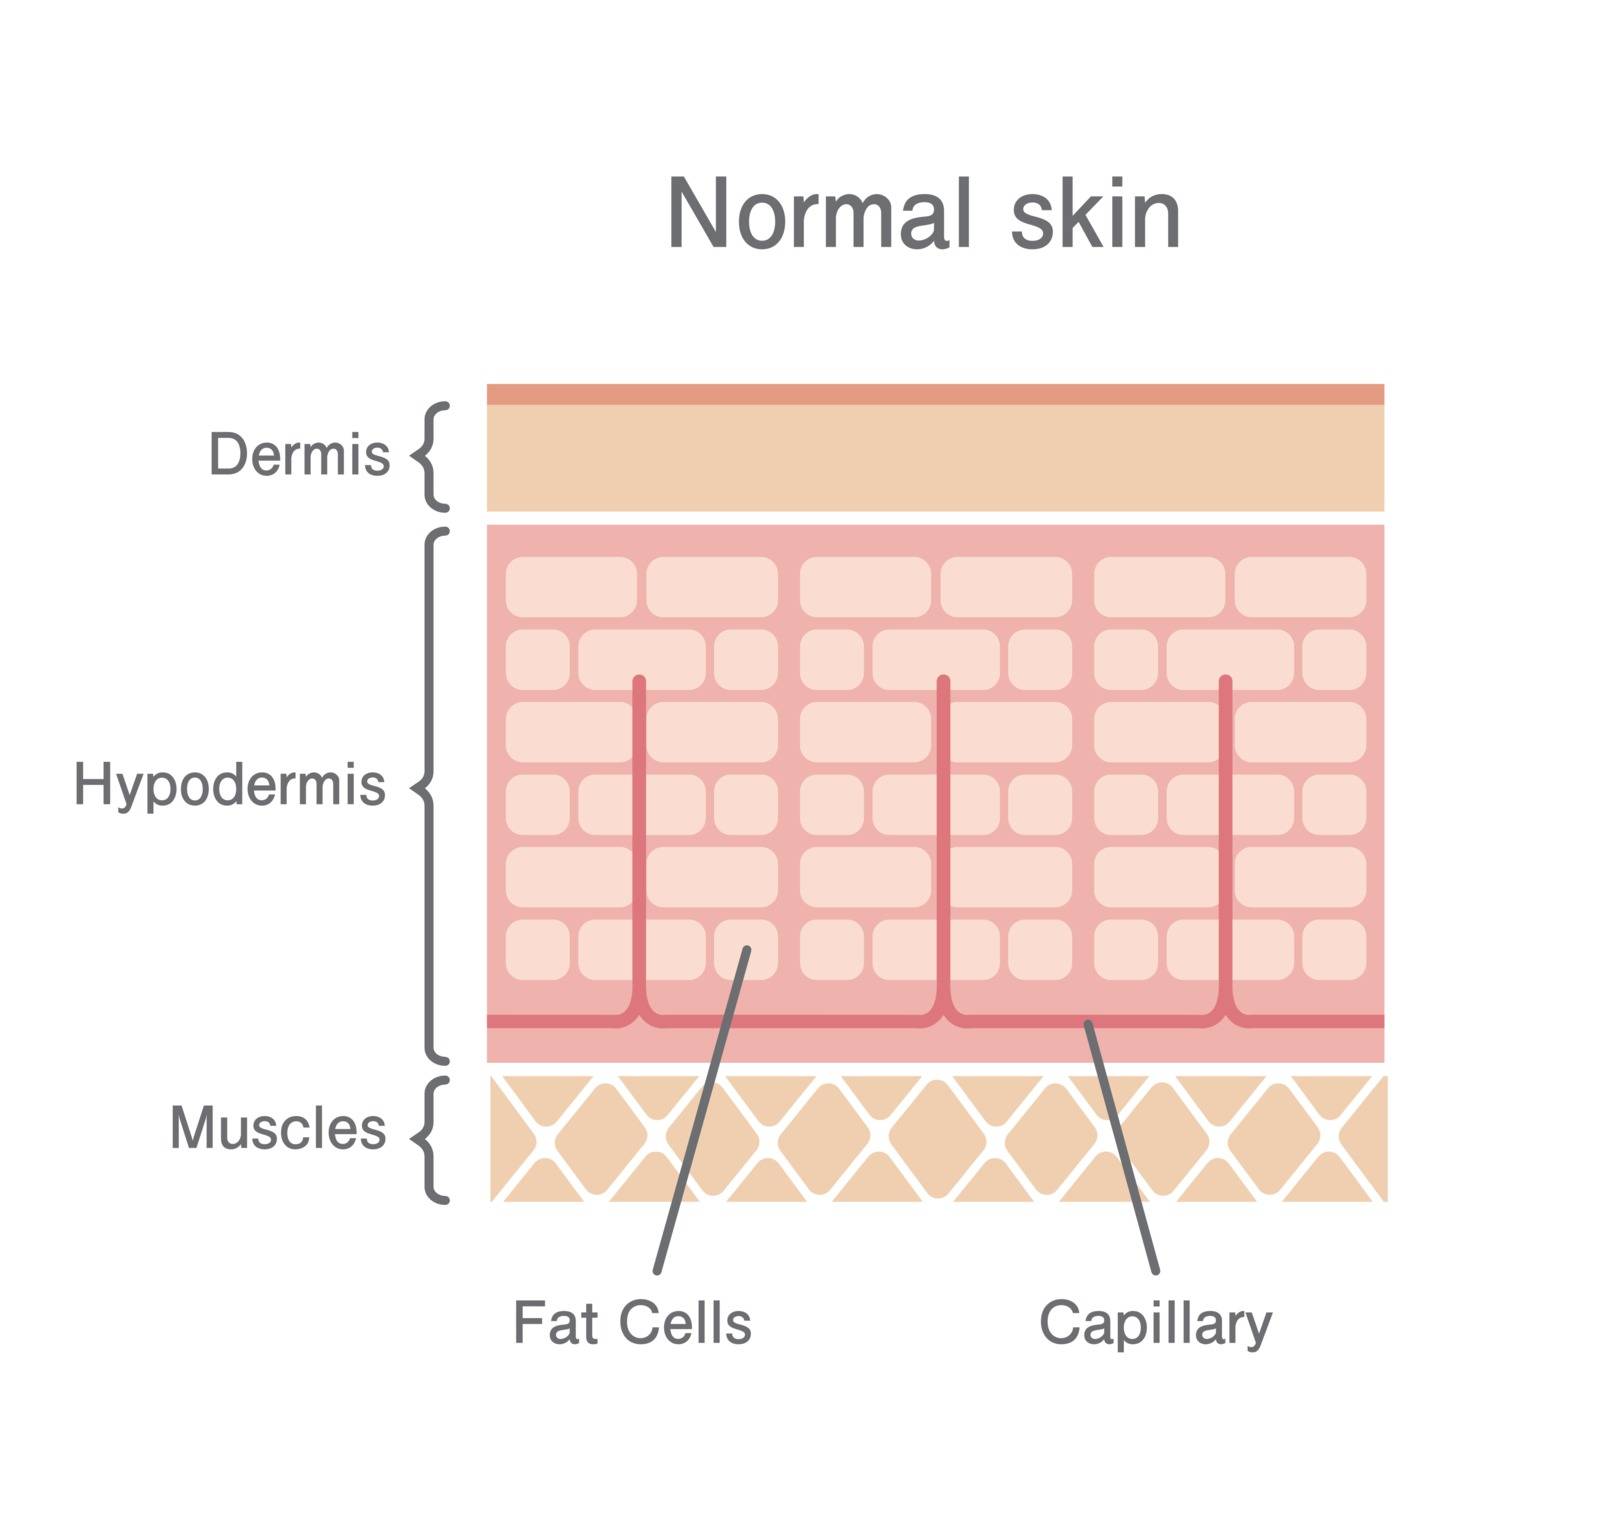 Normal skin illustration by barks